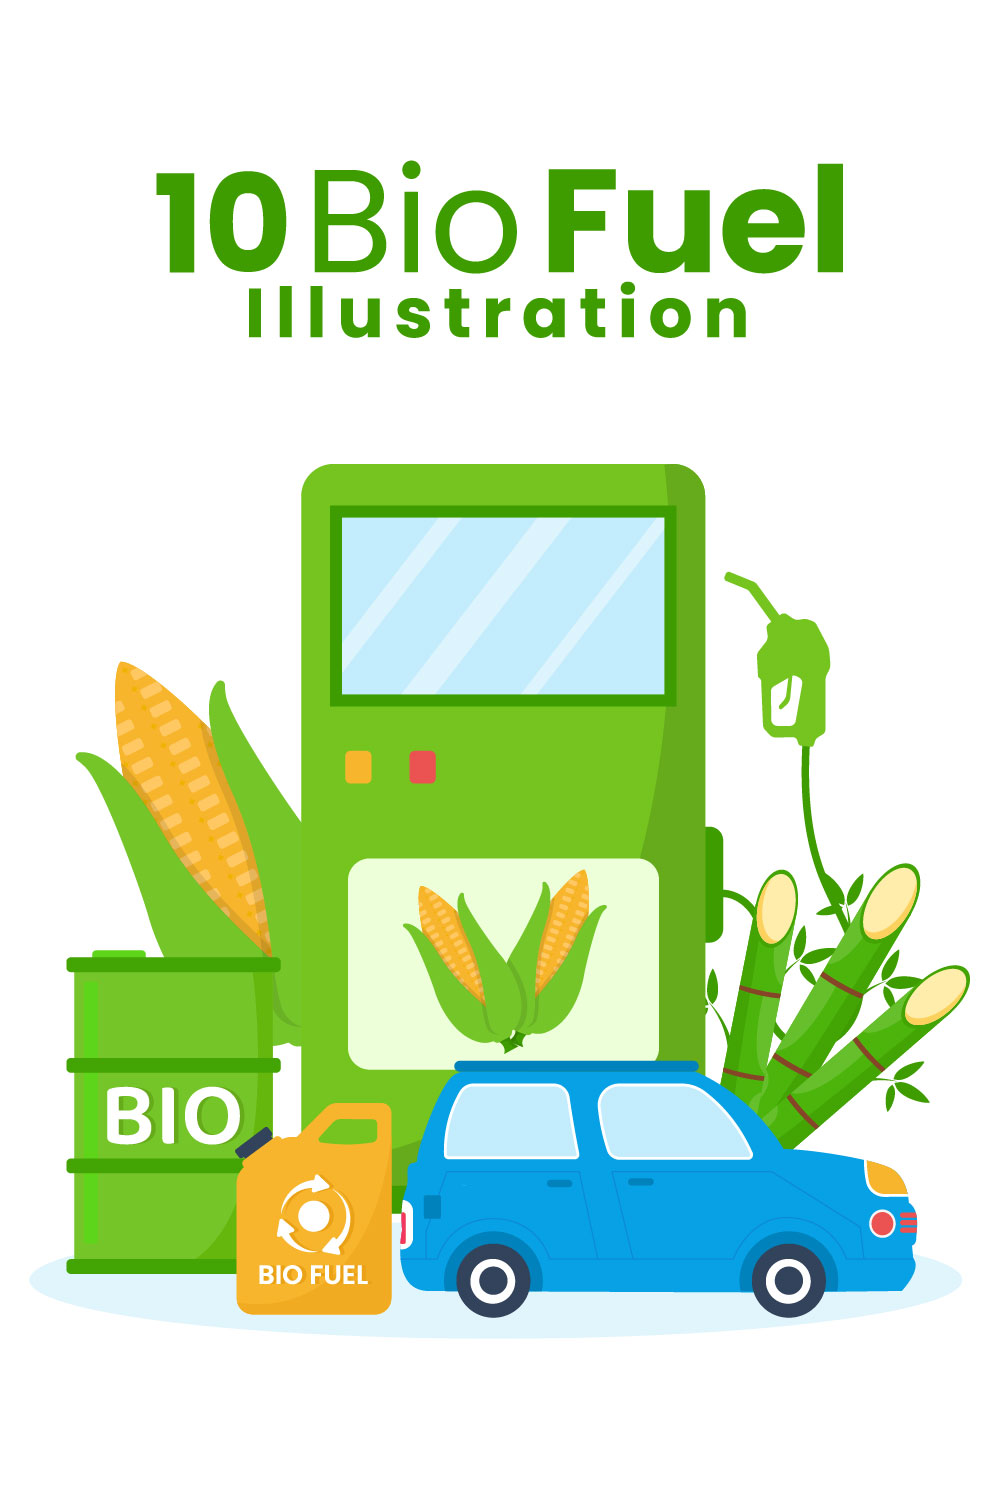 Biofuel Life Cycle Illustration pinterest image.